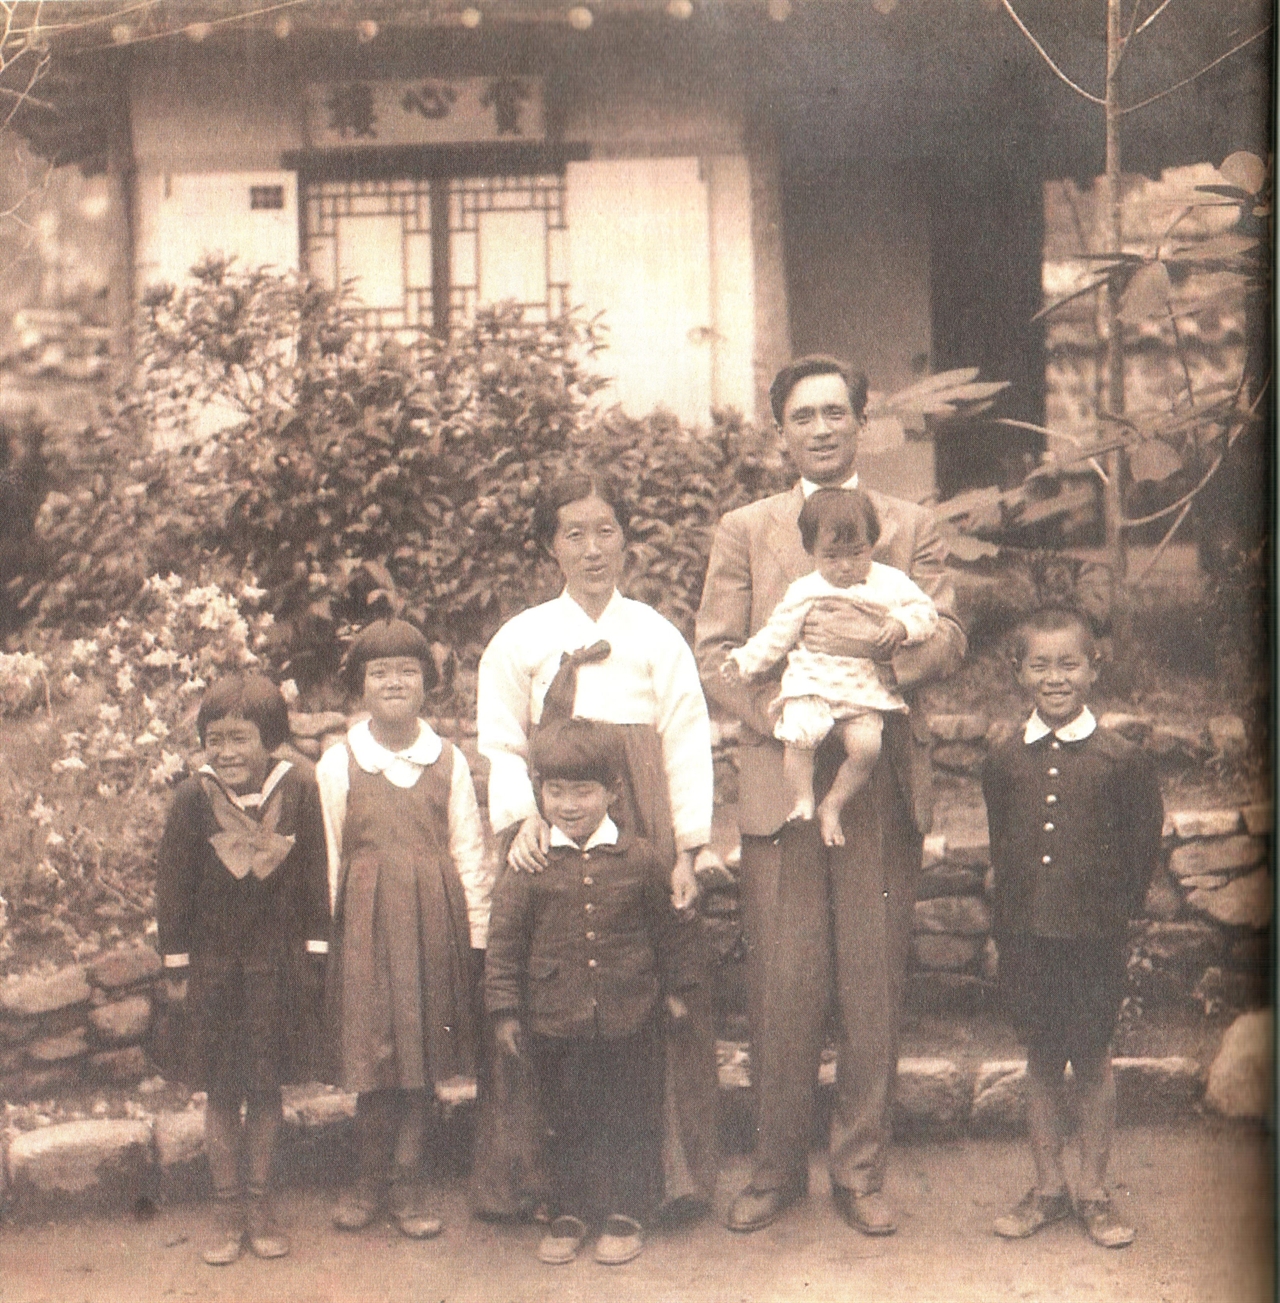 수연산방에서 부인과 다섯명의 아이들과 함께 살았던 시절